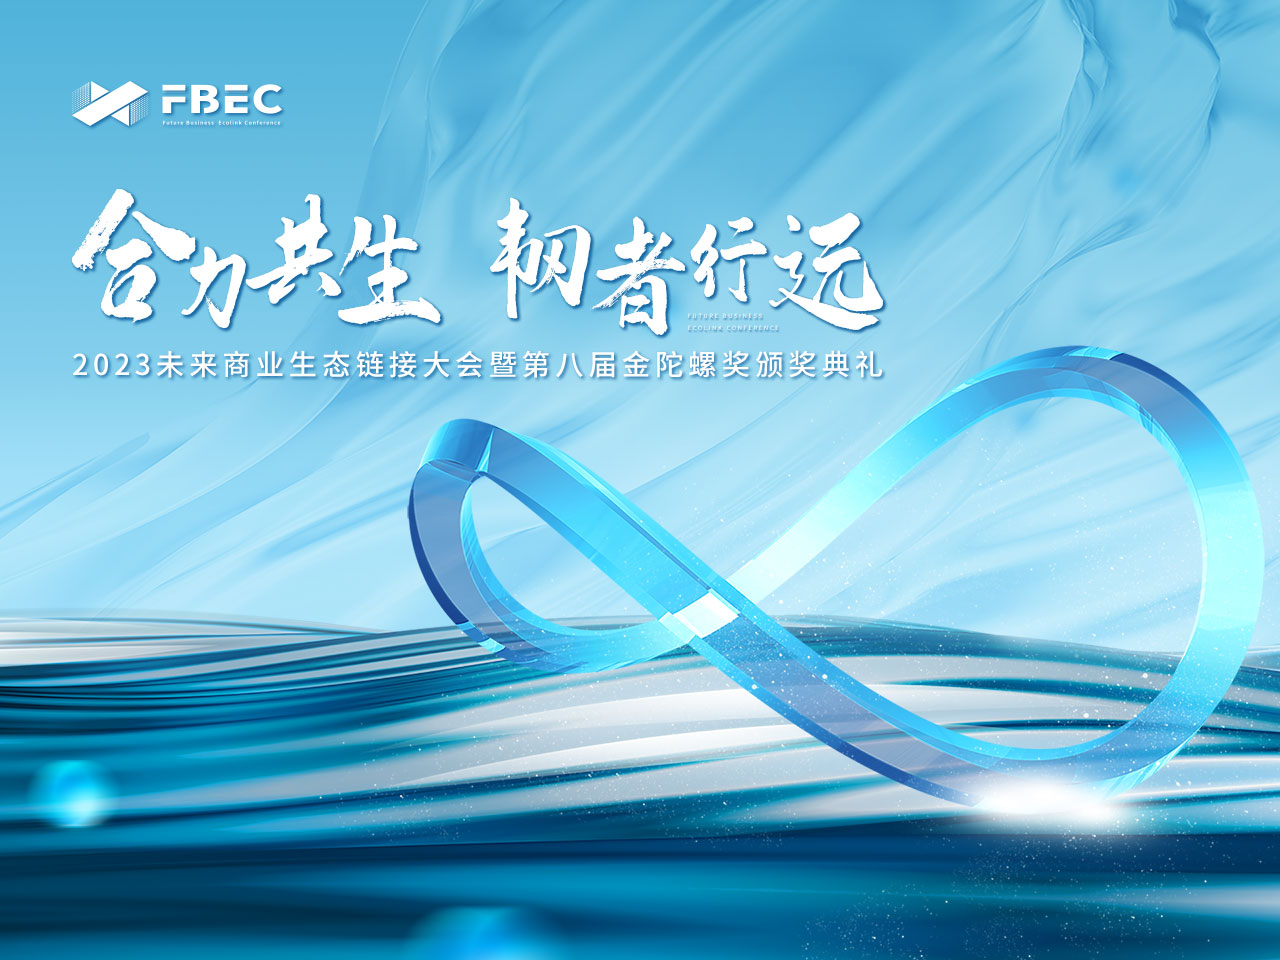 FBEC2023 | 致敬未知 联合创始人 阮郑福确认出席并发表主题演讲